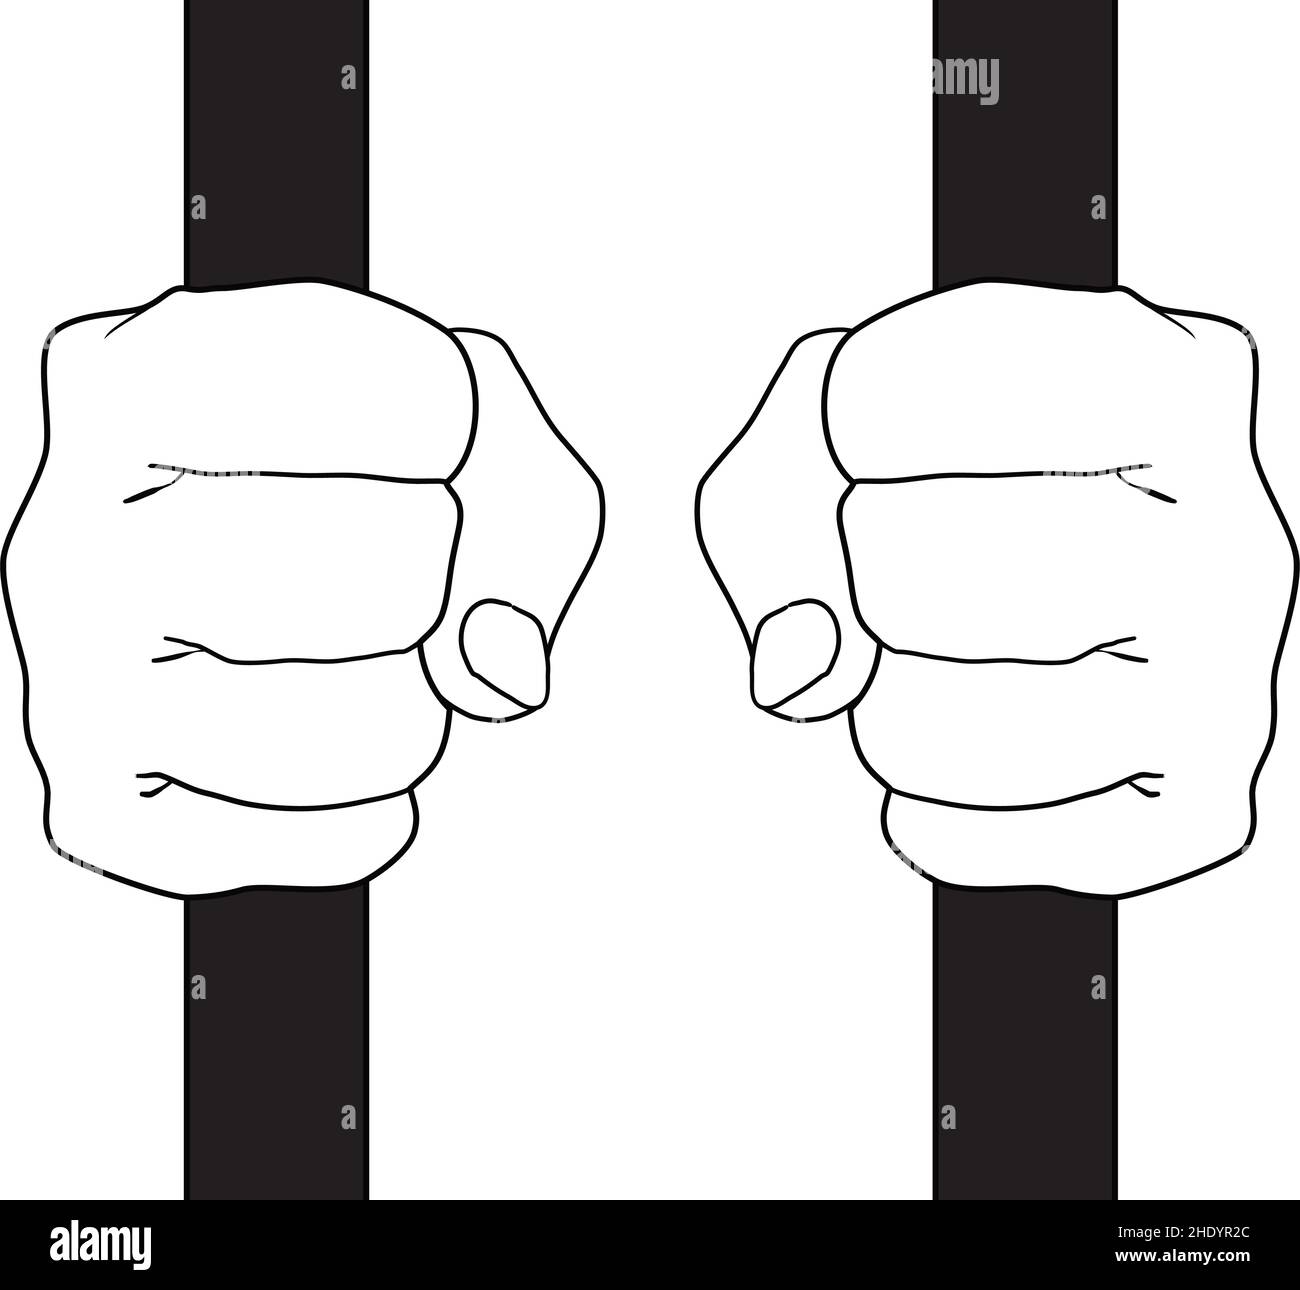 mains du prisonnier fermées sur les barreaux.Dessin vectoriel noir et blanc Illustration de Vecteur